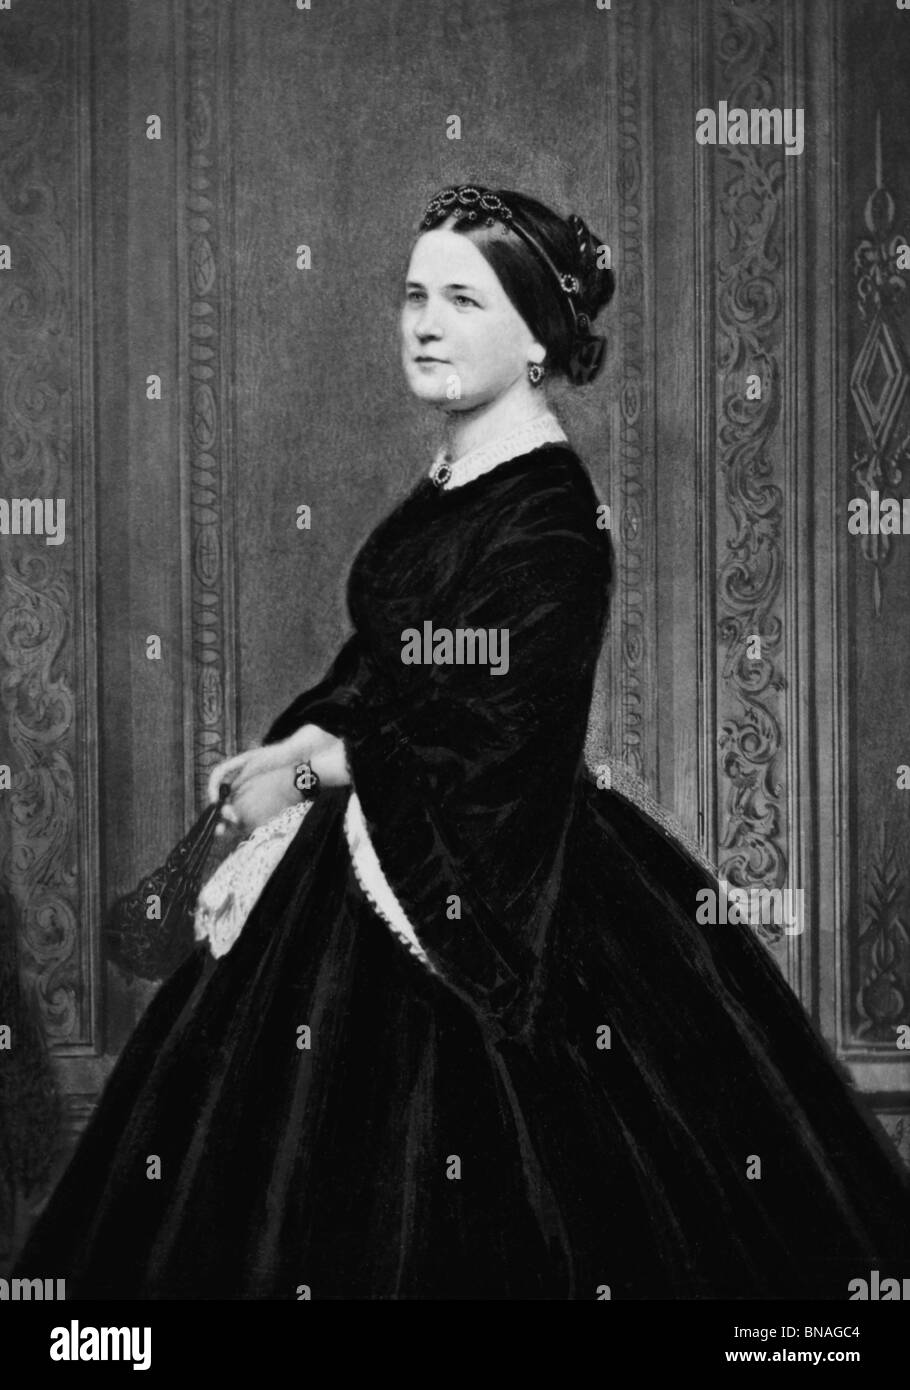 Porträt-Foto-c1860s von Mary Todd Lincoln (1818-1882) - Ehefrau von US-Präsident Abraham Lincoln + First Lady von 1861 bis 1865. Stockfoto